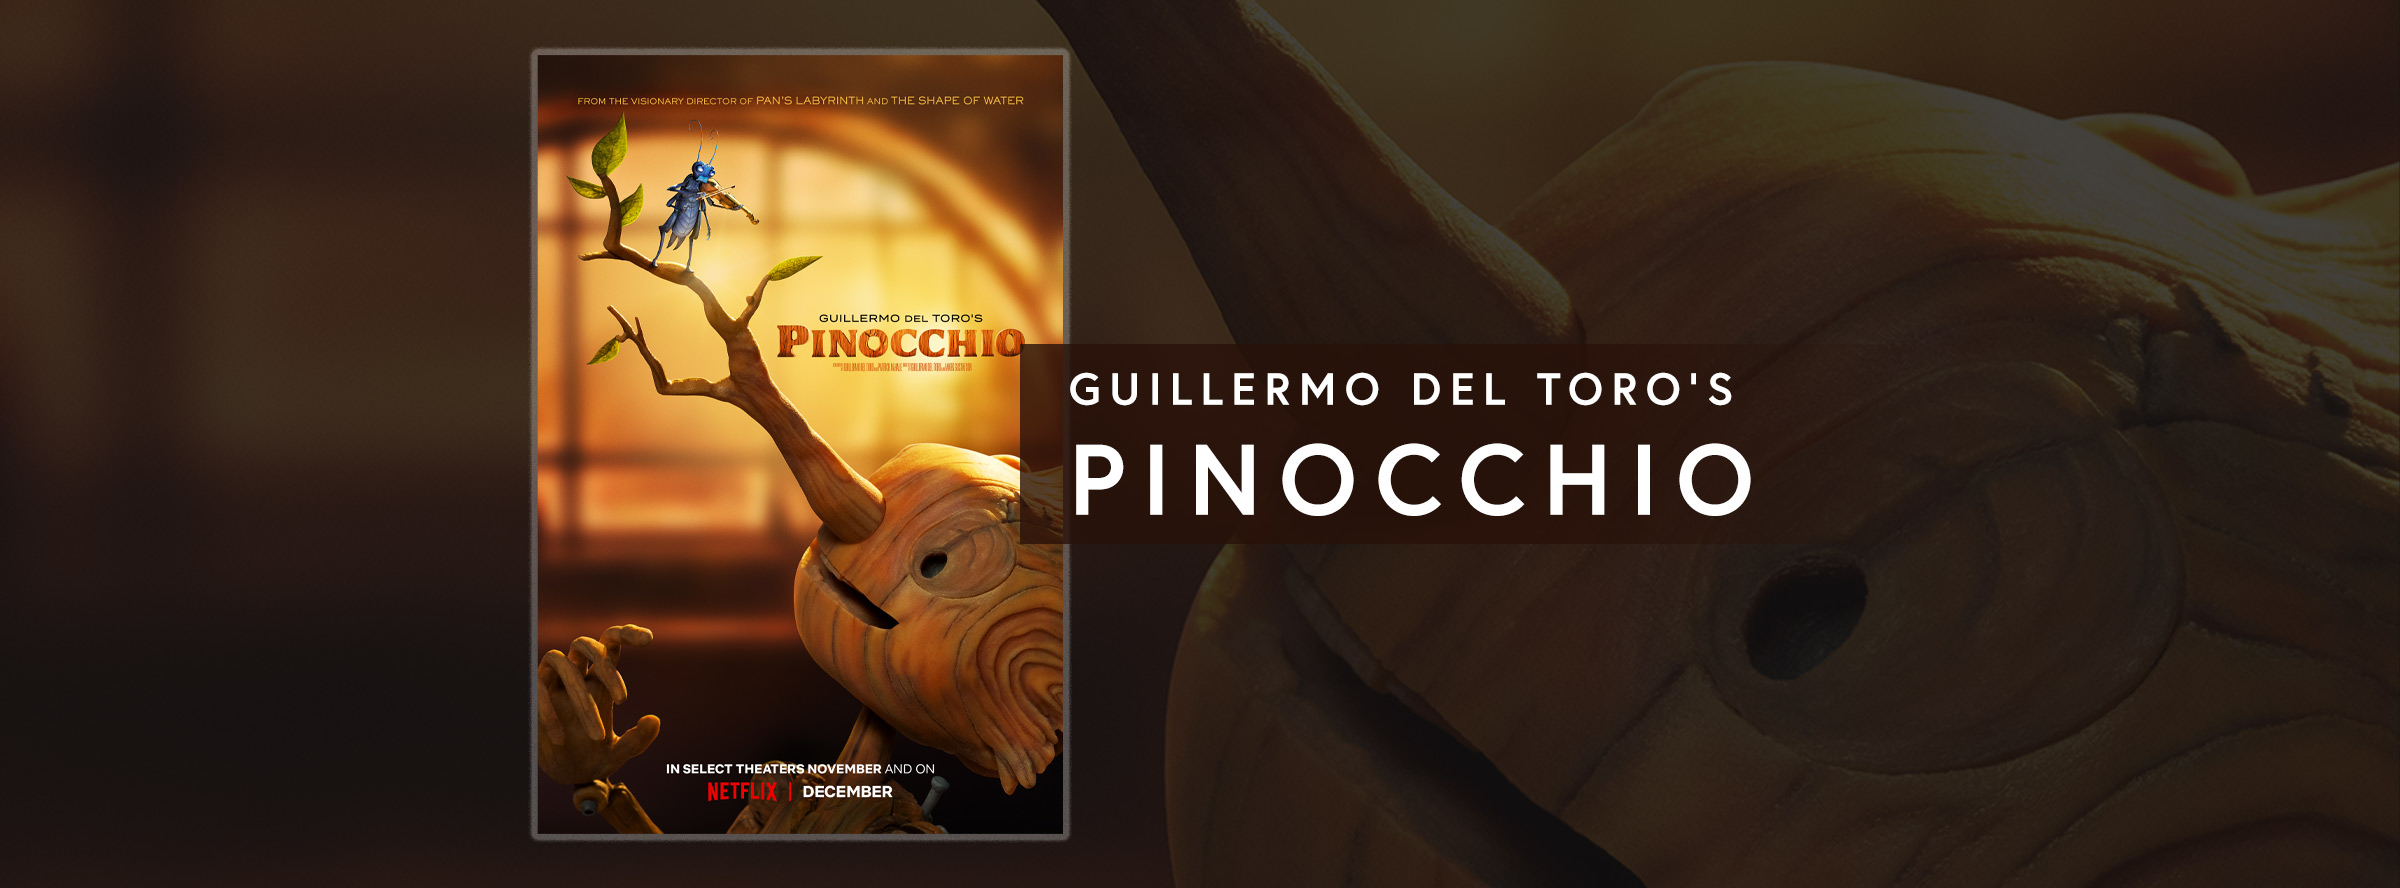 Slider Image for Guillermo del Toro's Pinocchio